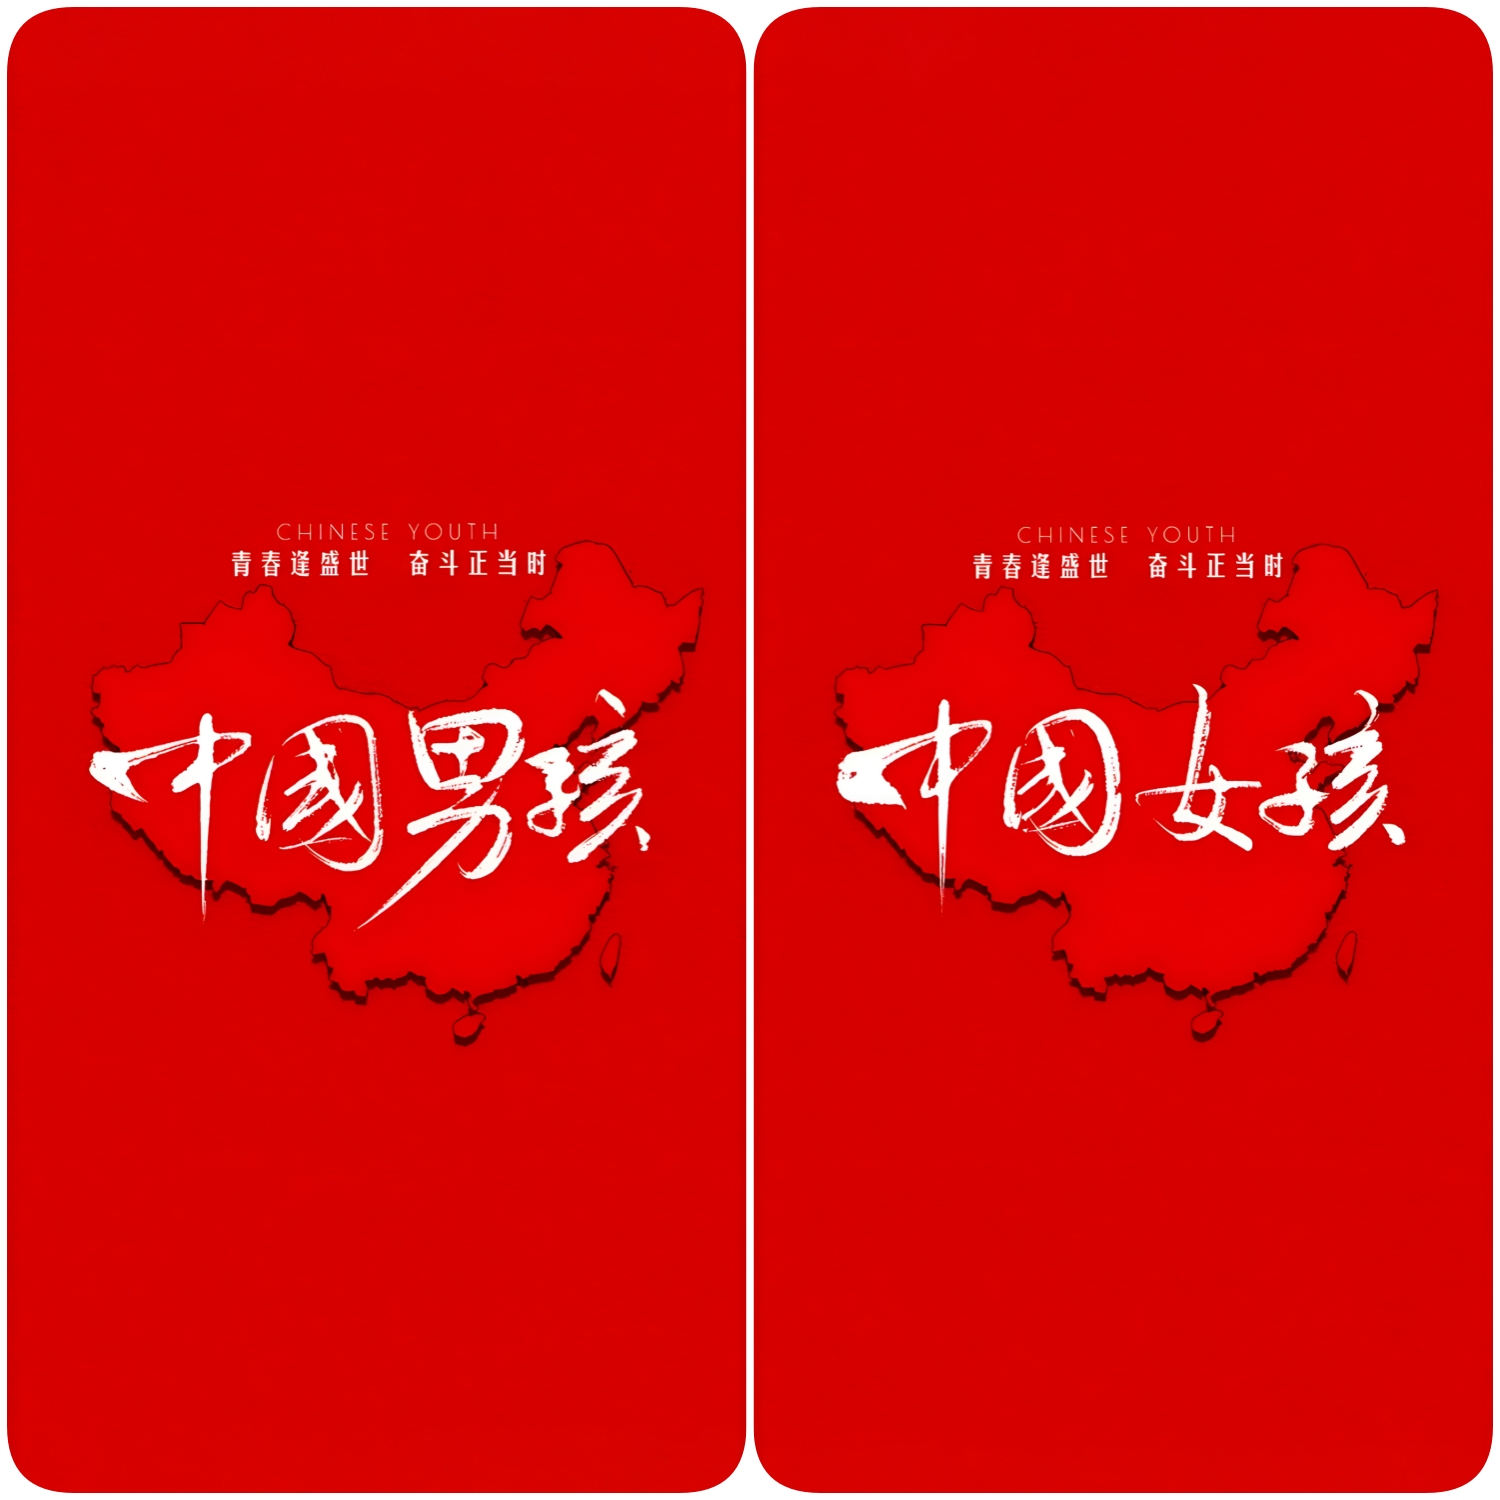 手机壁纸高清4k创意爱国中国青年男孩女孩红色桌面锁屏屏保图片